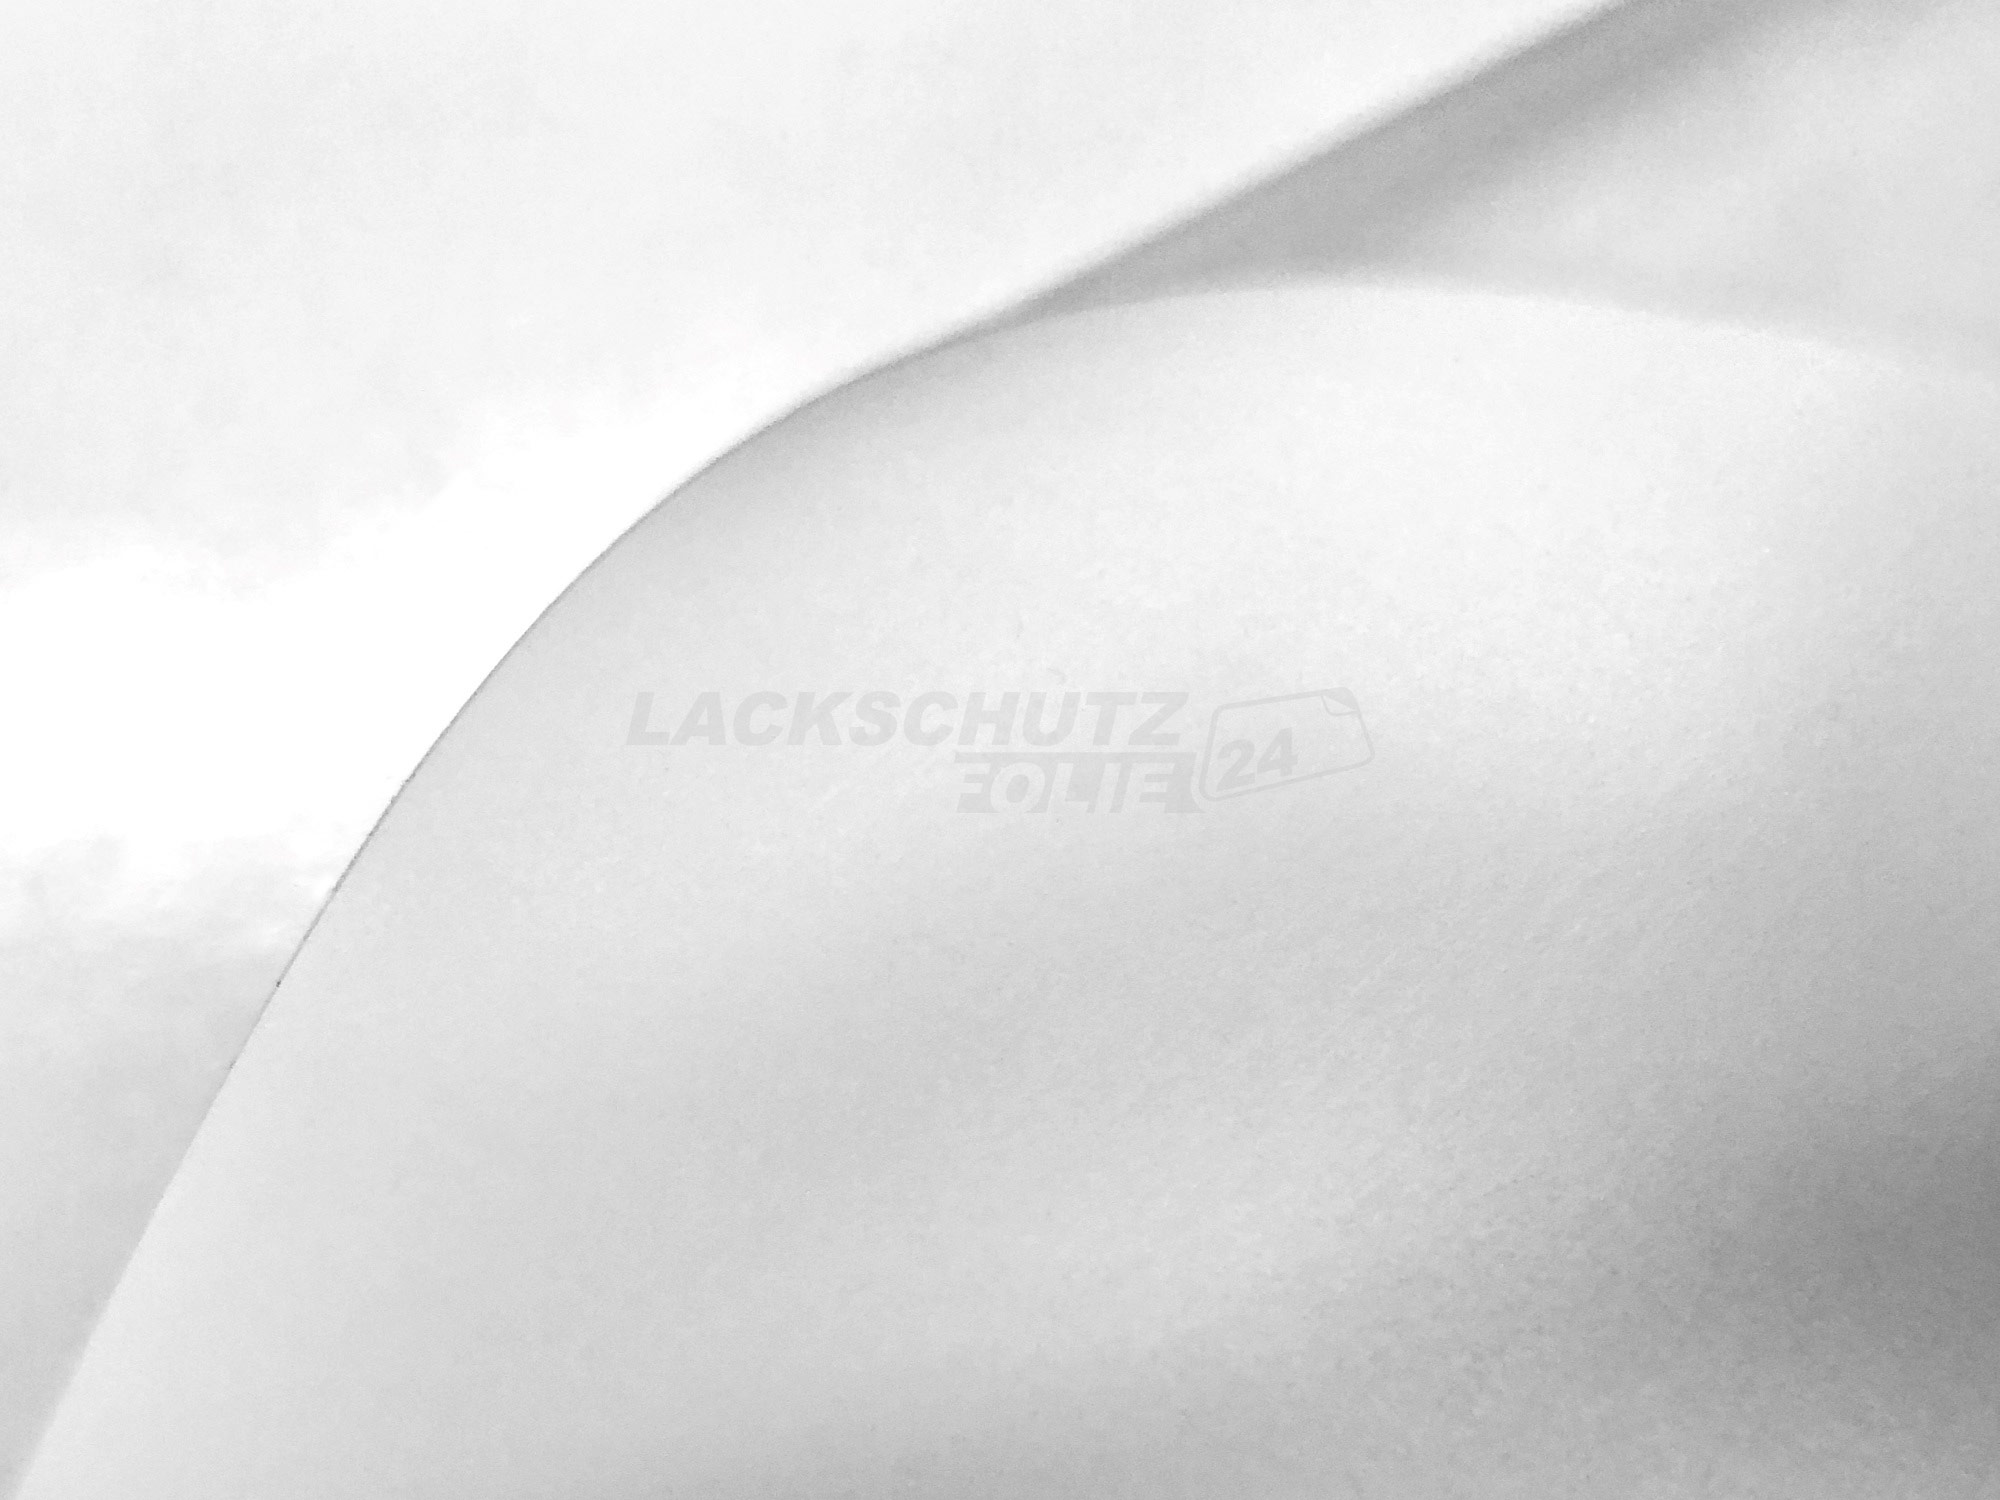 Ladekantenschutzfolie - Transparent Glatt MATT 110 µm stark  für Chevrolet Cruze SW ab BJ 08/2012